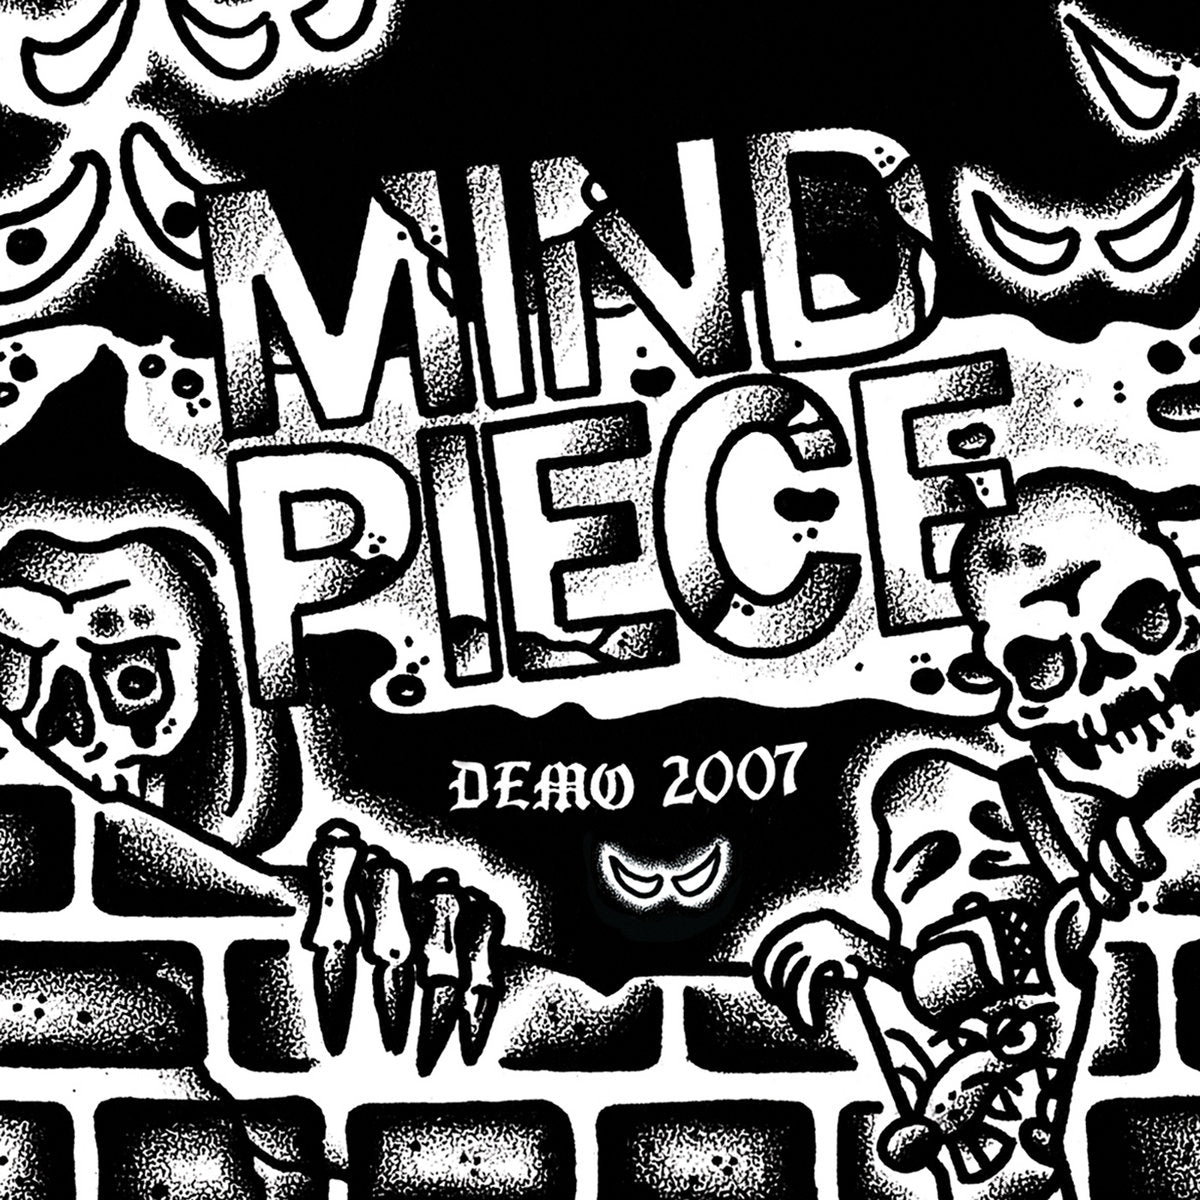 Mind Piece "Demo 2007" 7" Vinyl